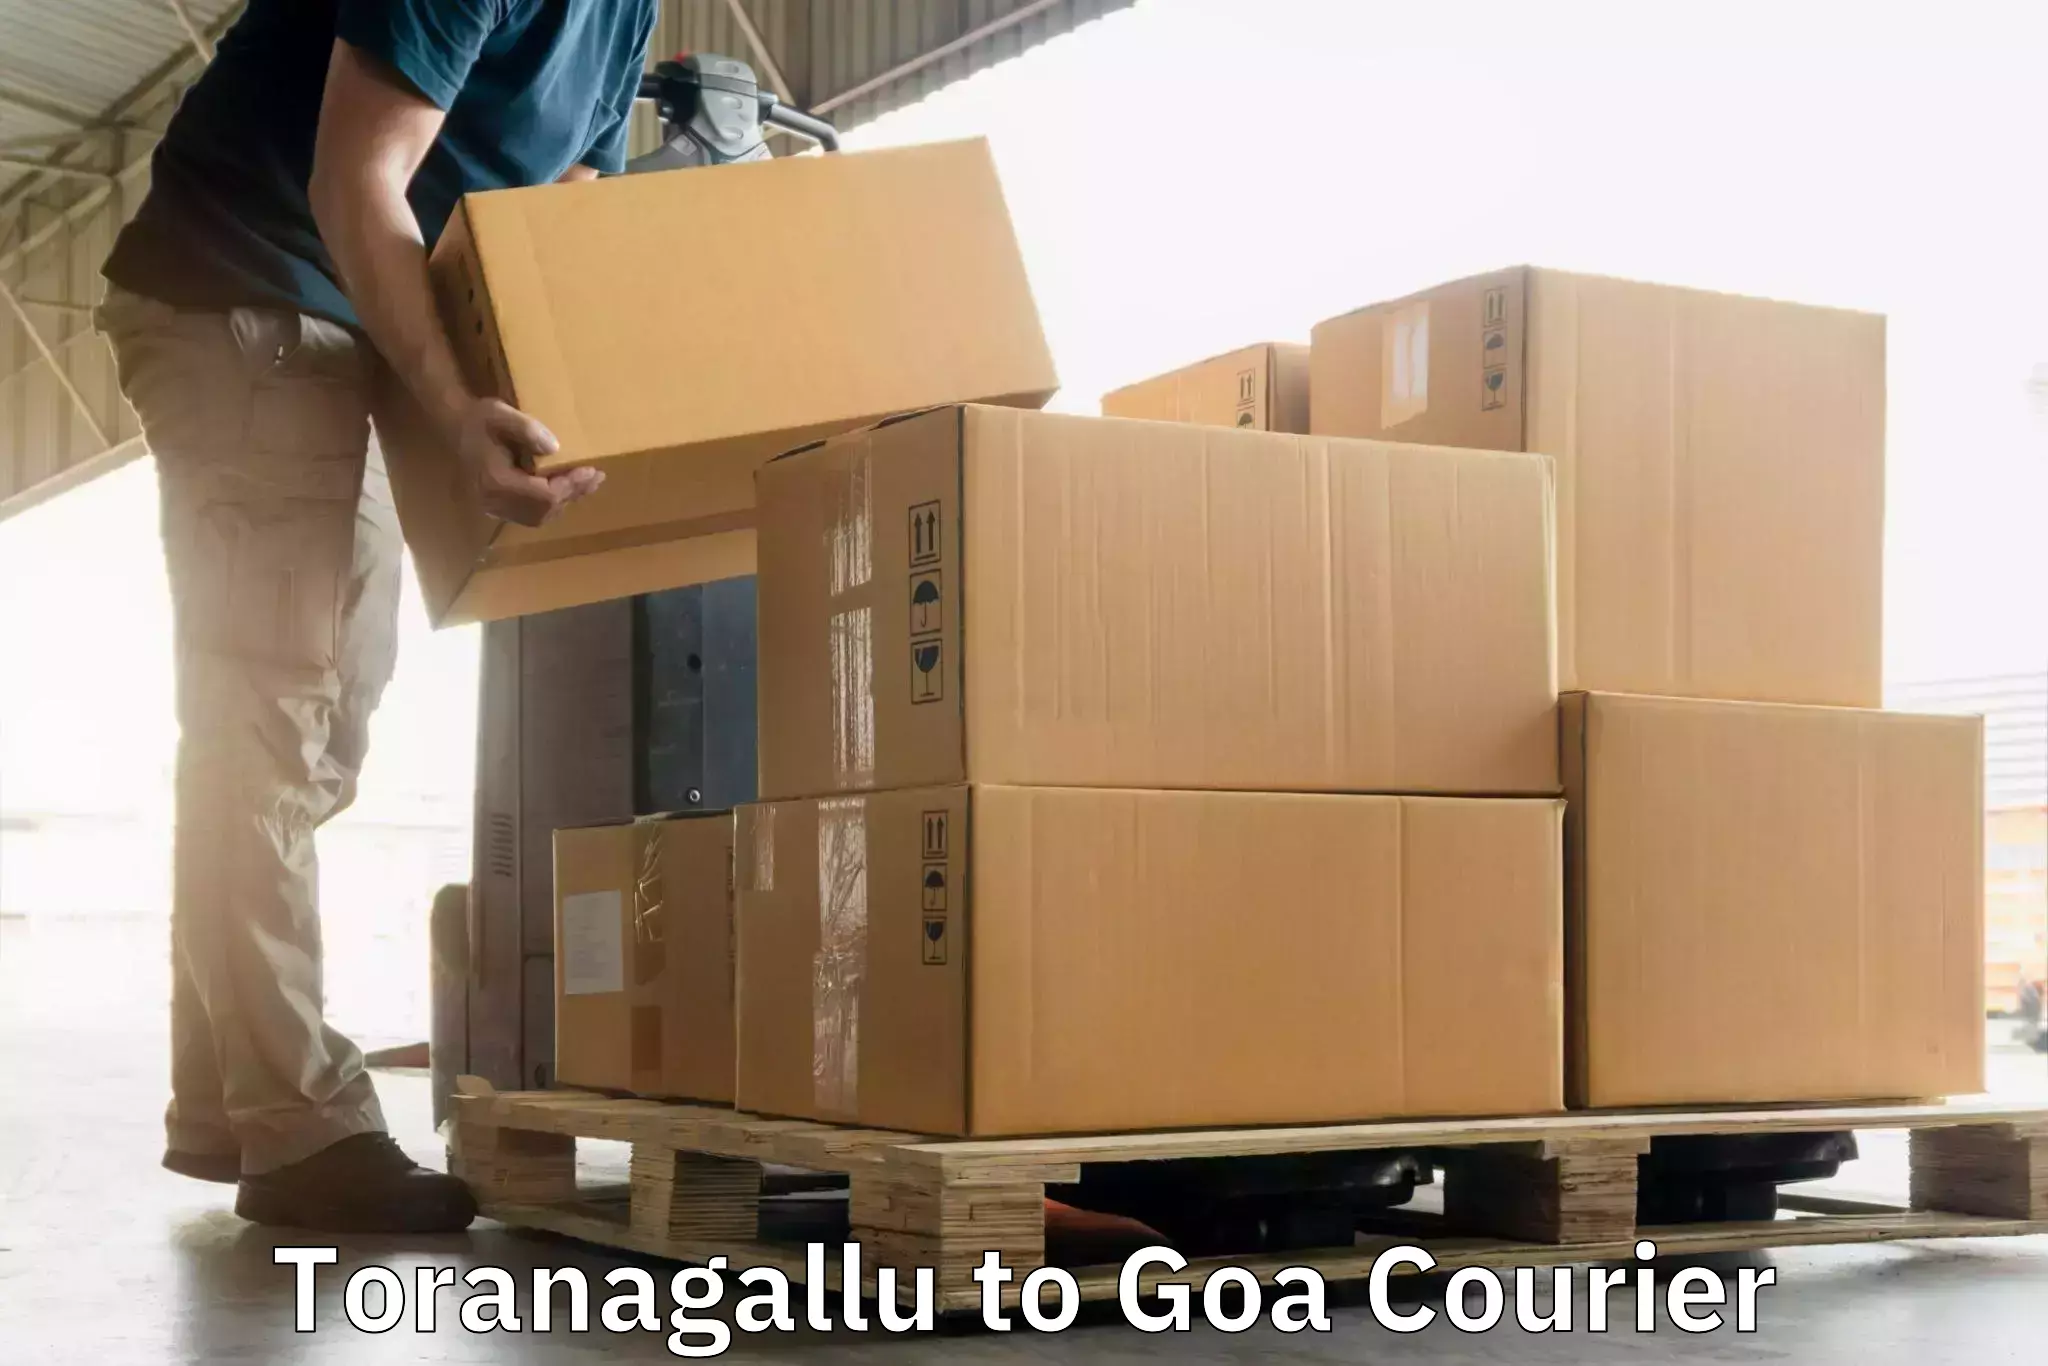 Modern courier technology Toranagallu to Goa